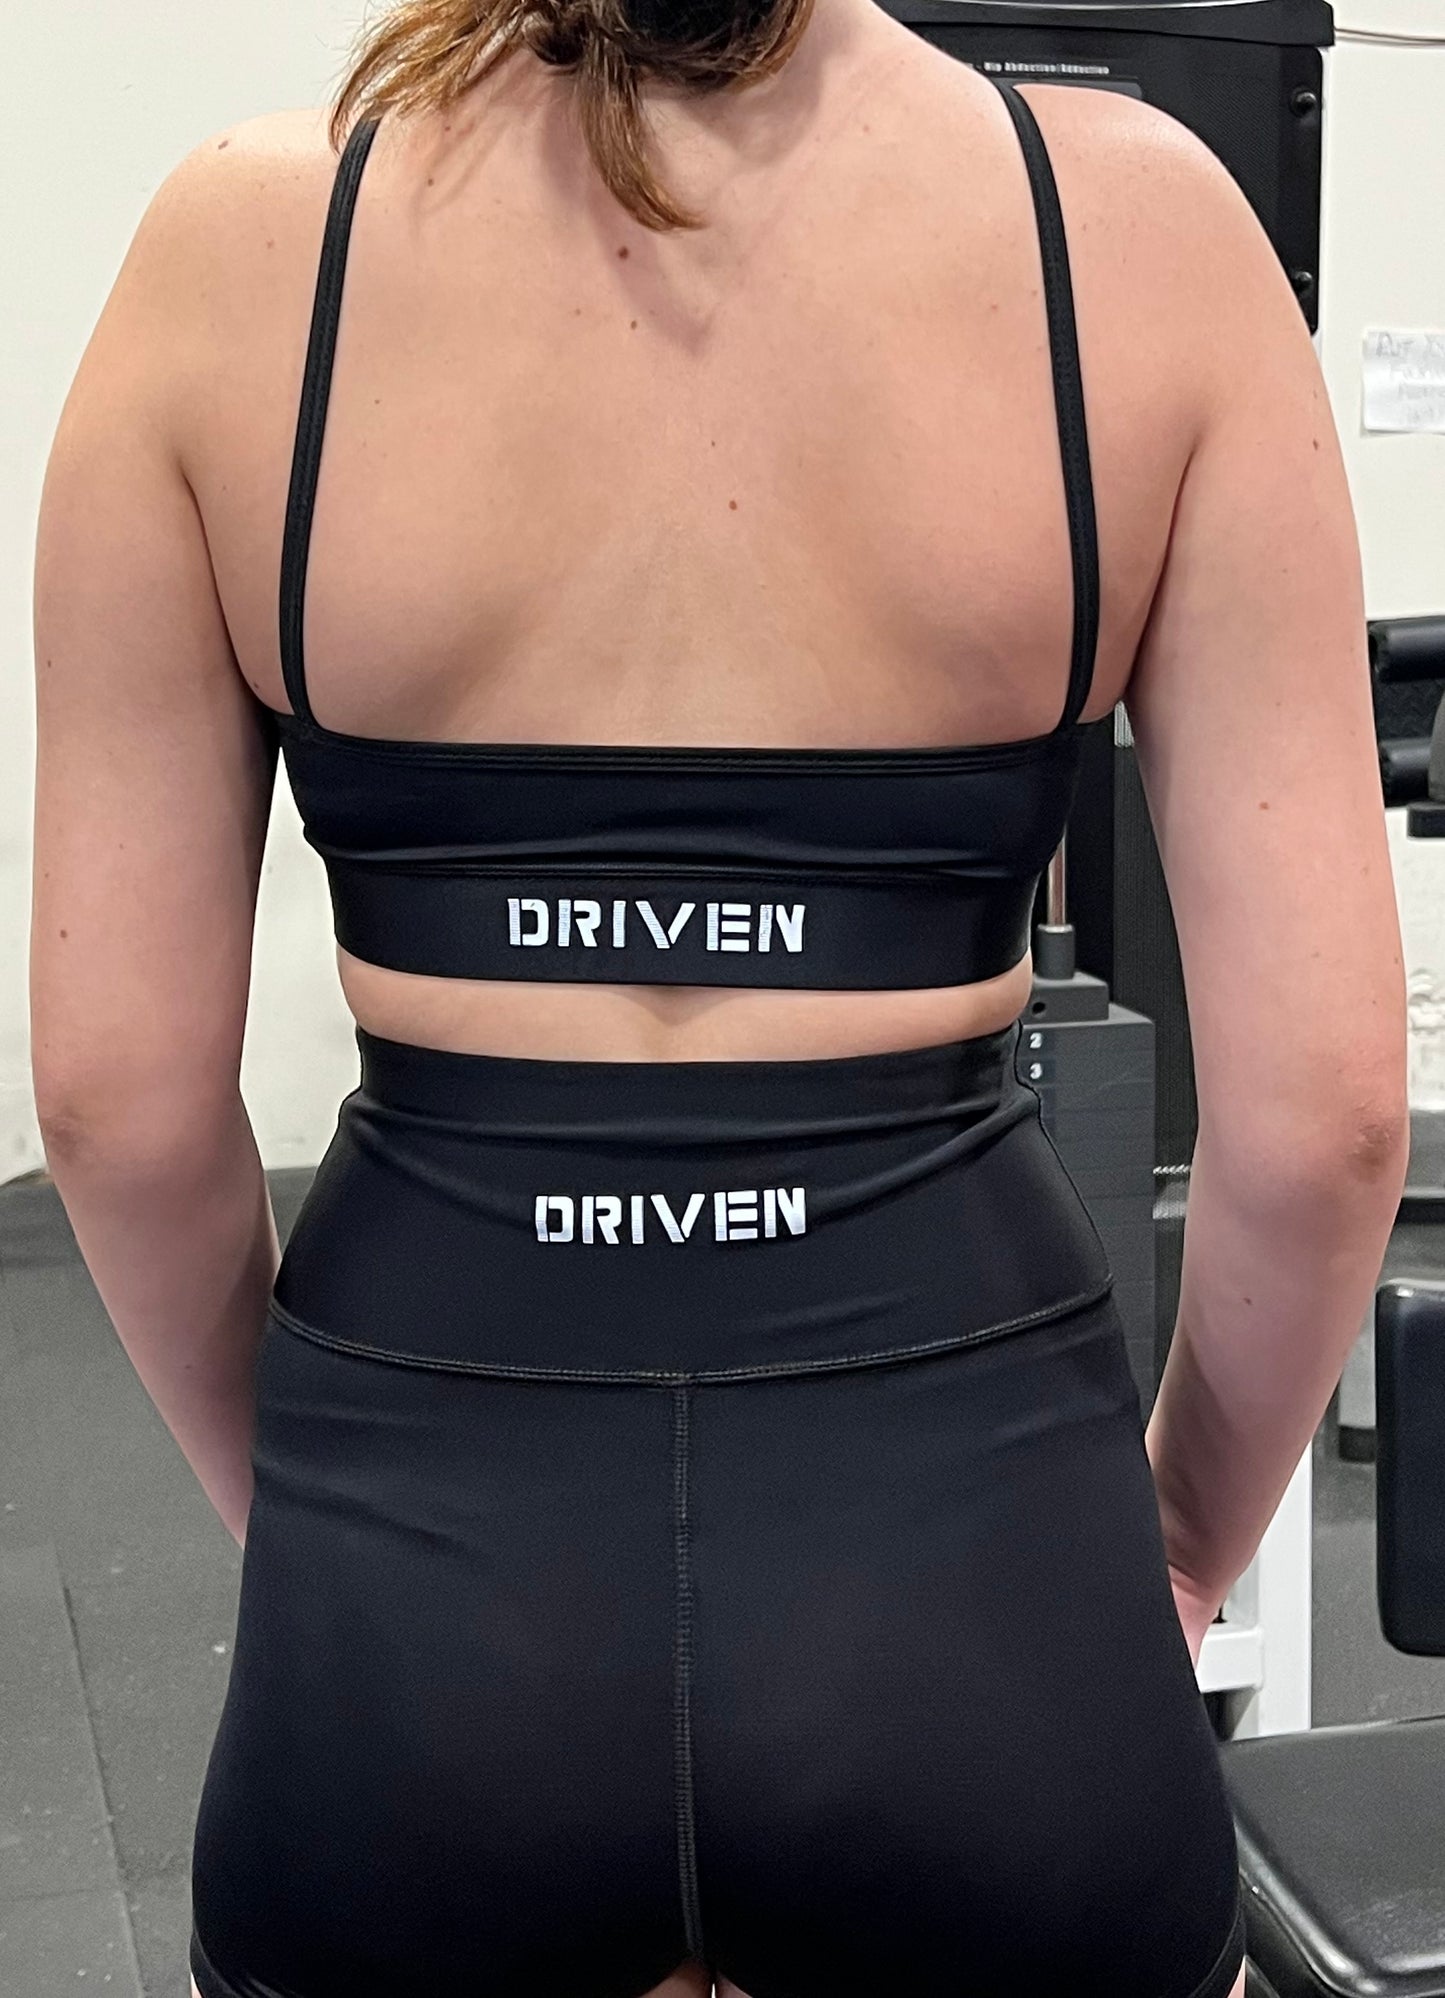 DRIVEN - Women's Sports Bra w/Thin Straps